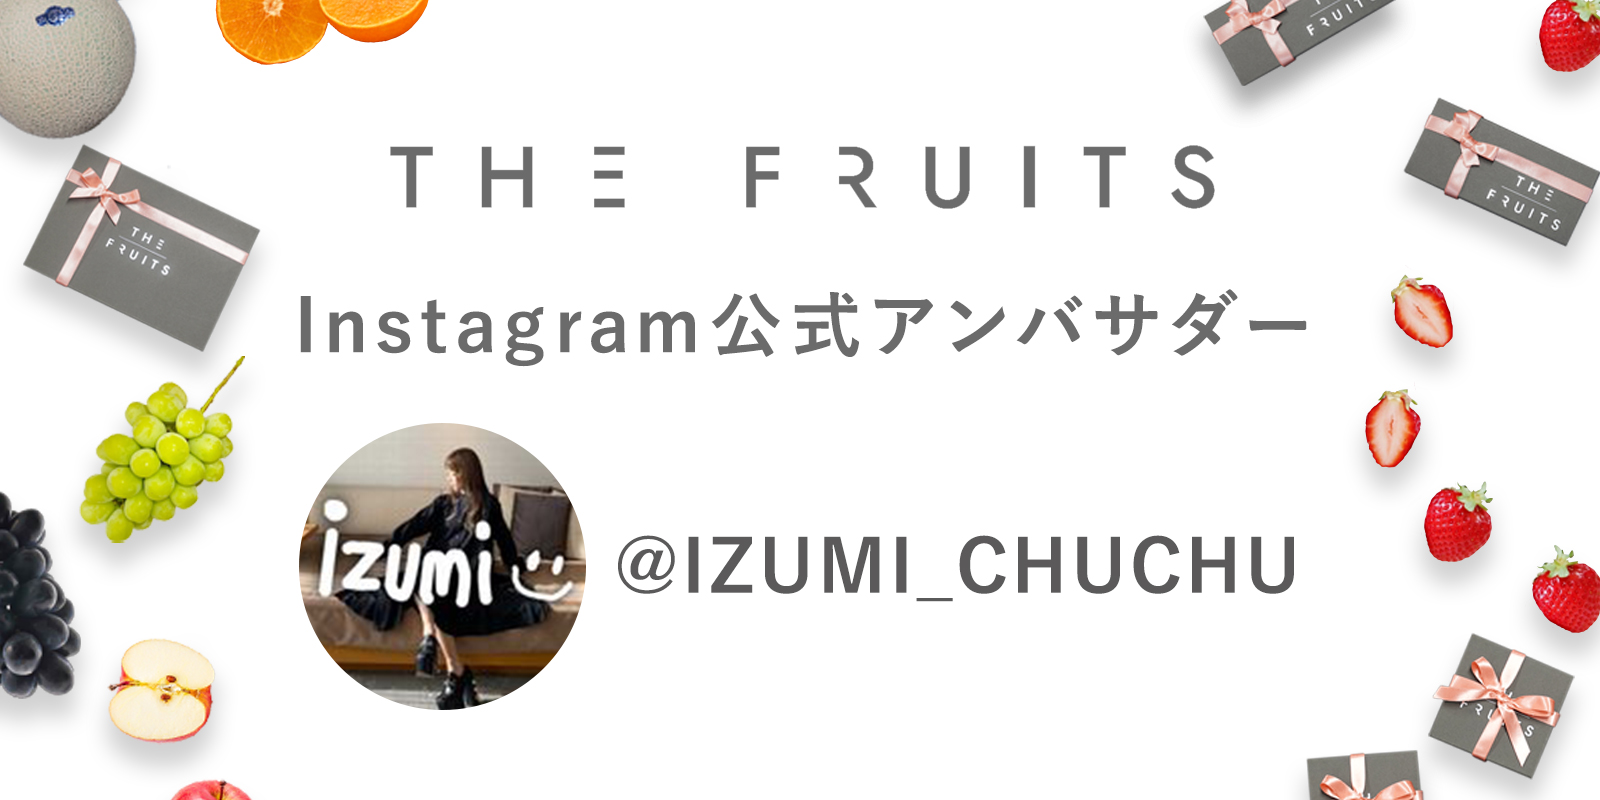 THE FRUITS公式アンバサダー就任のお知らせ　@izumi_chuchuのイメージ